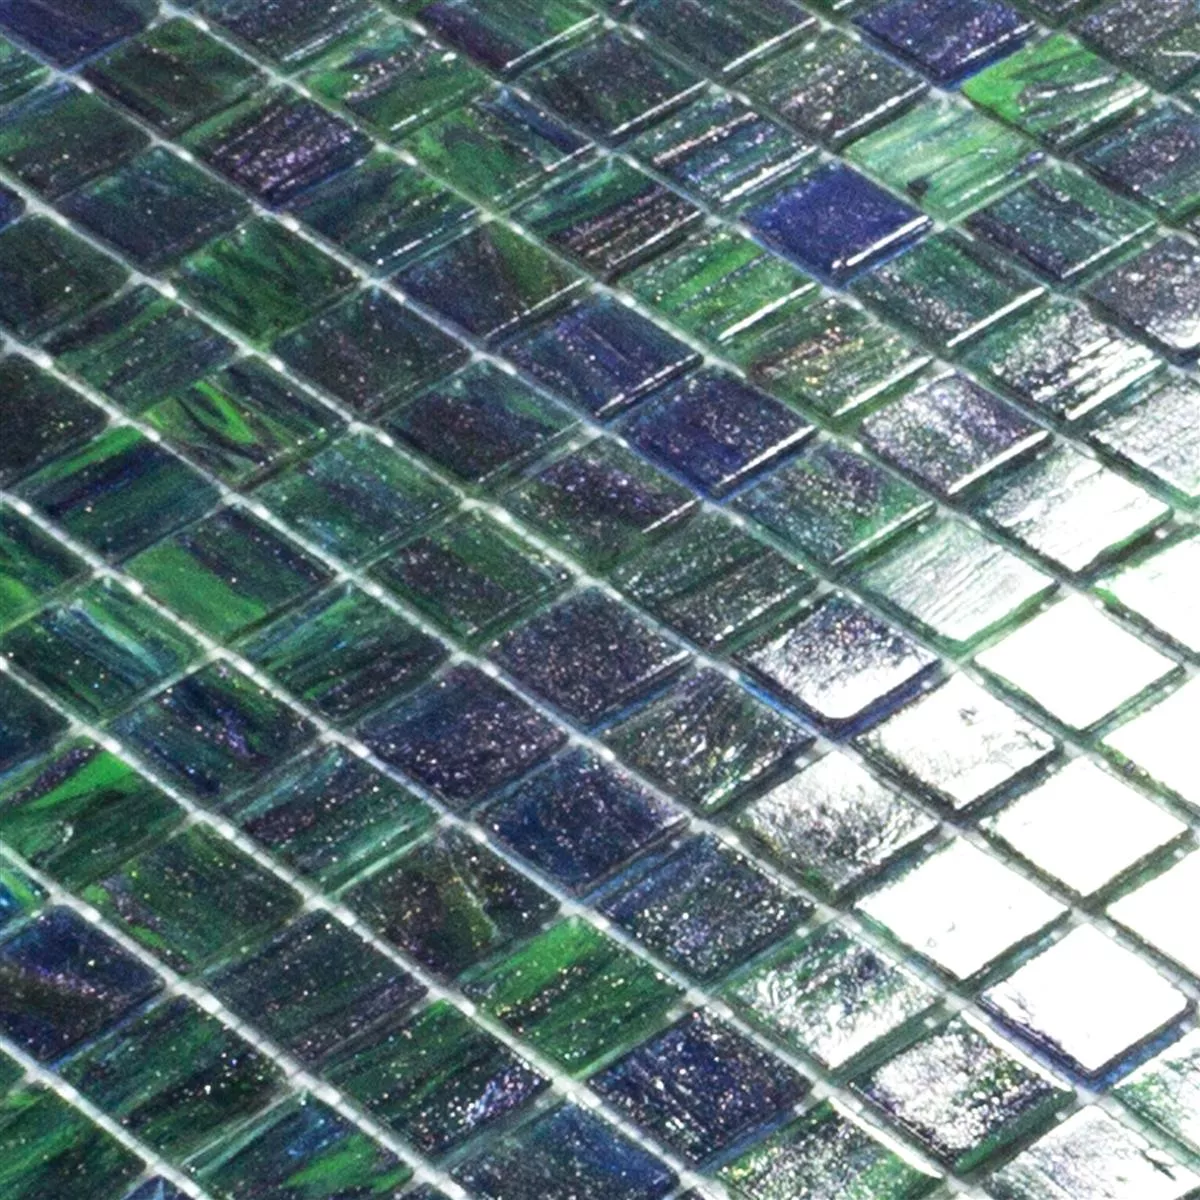 Mozaiki Szklana Płytki Catalina Niebieski Zielony Mix